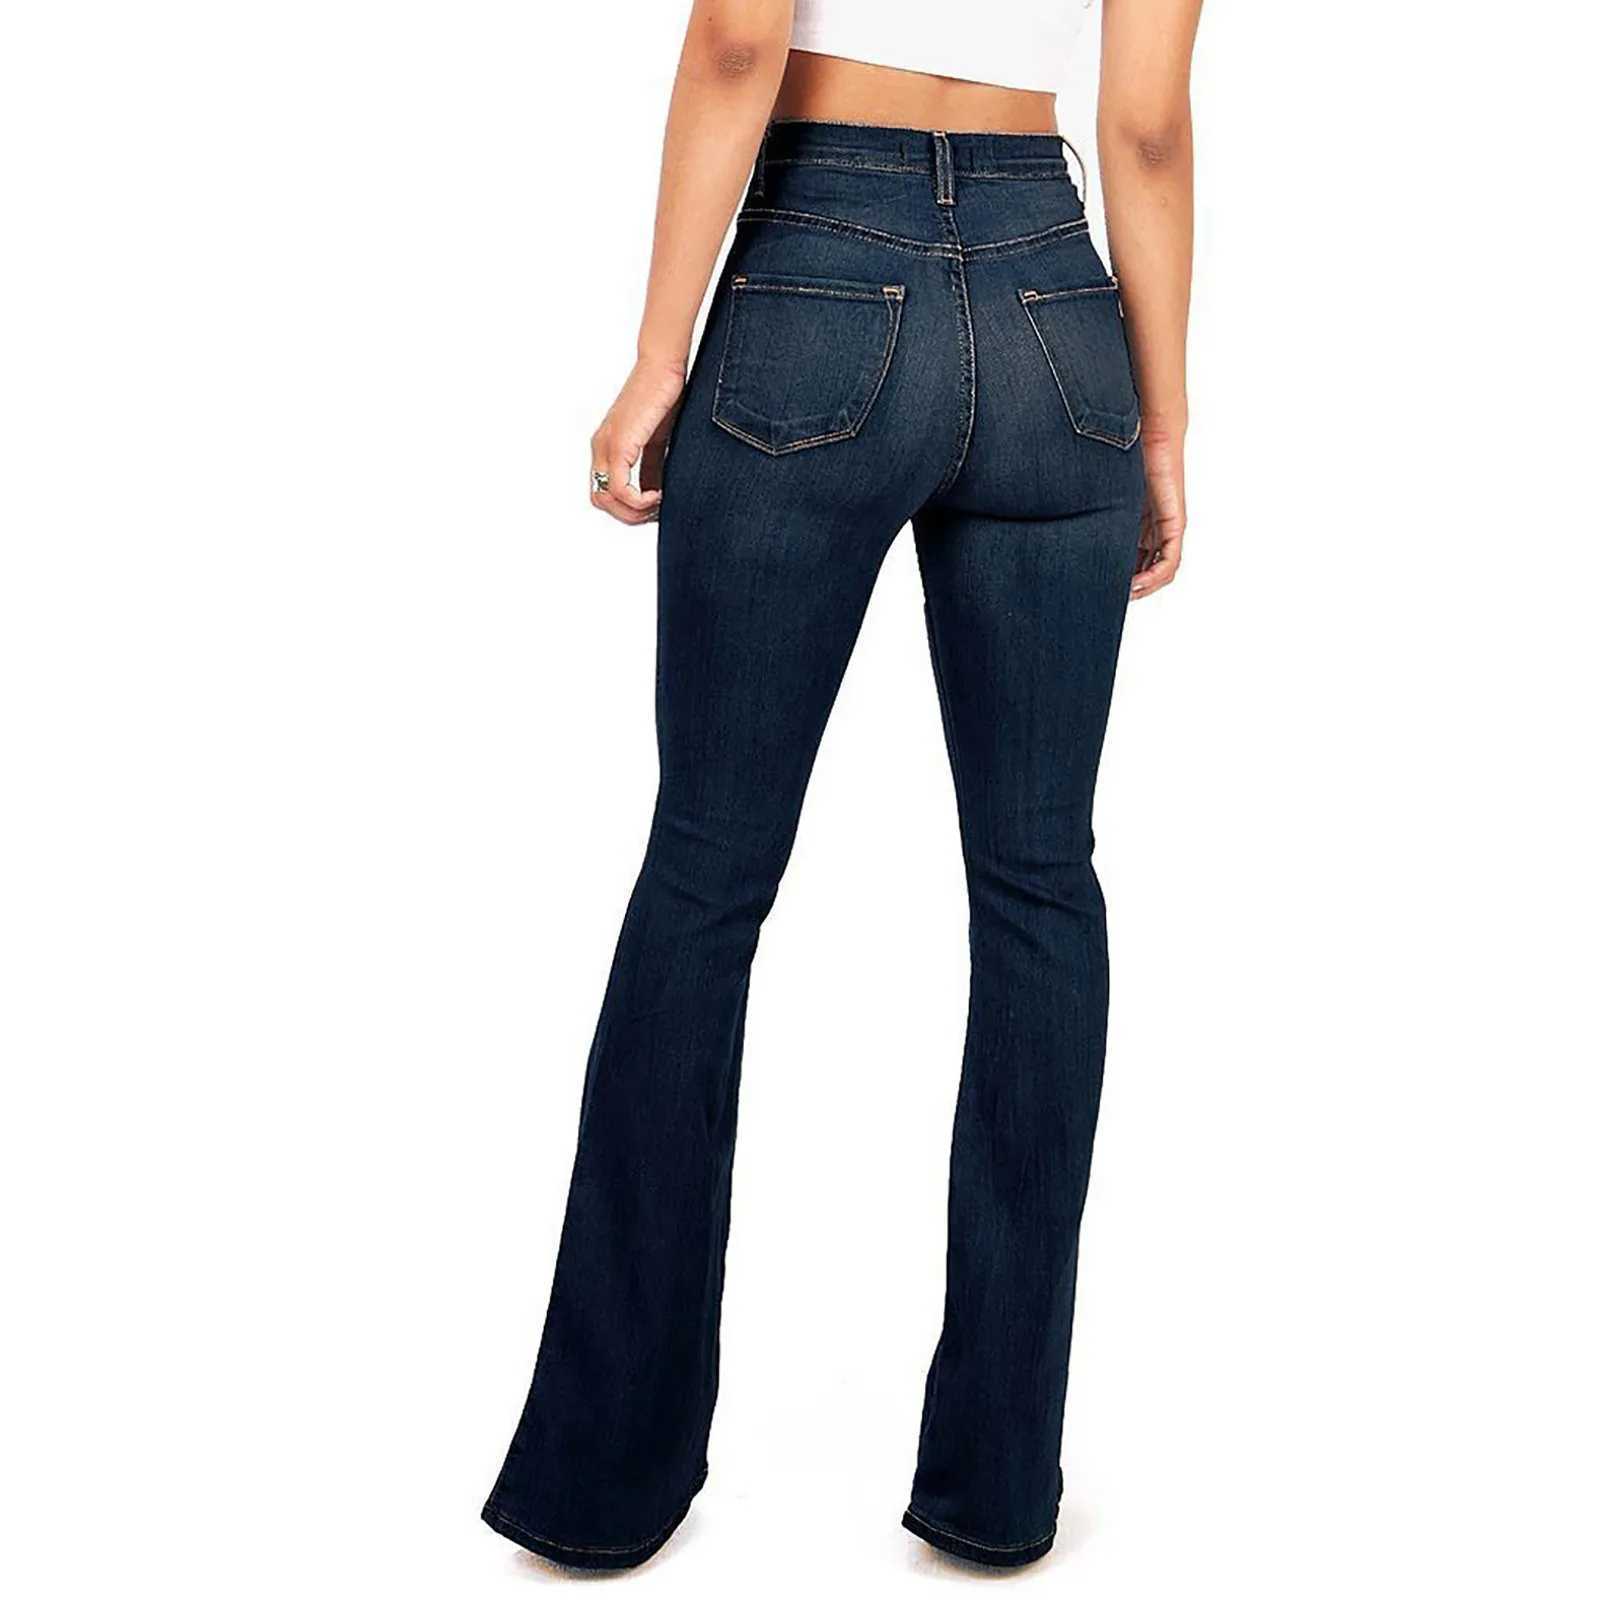 Kadın Kotları Kadınlar Yüksek Sokak Flare Pantolon Vintage Moda Düz Renk Çok Cocket Kot Kot Padleri Yüksek Bel Geniş Bacak Bootcut Pantolon 24328